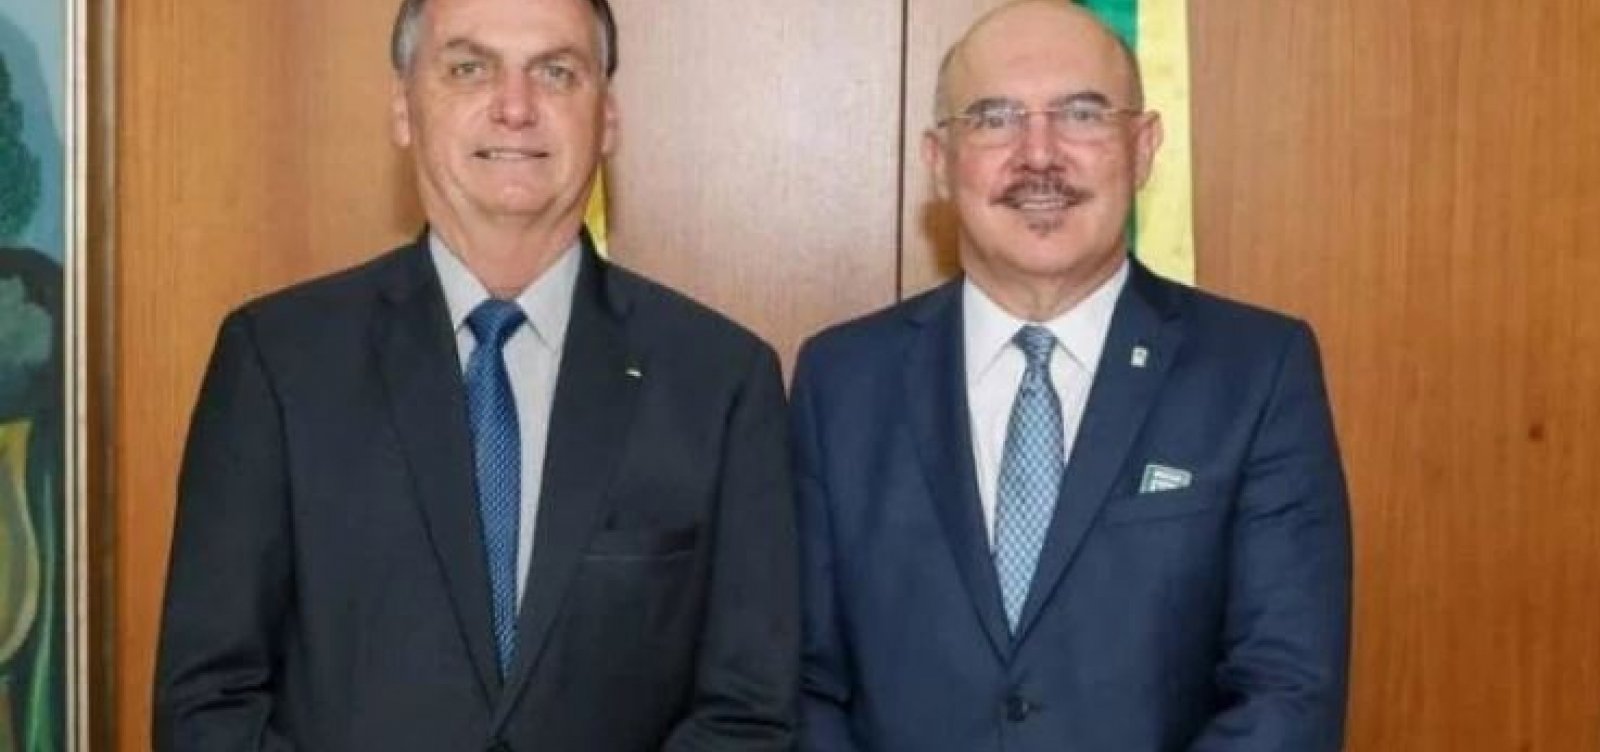 “Sinal de que não interfiro na PF”, diz Bolsonaro sobre prisão de ex-ministro Milton Ribeiro